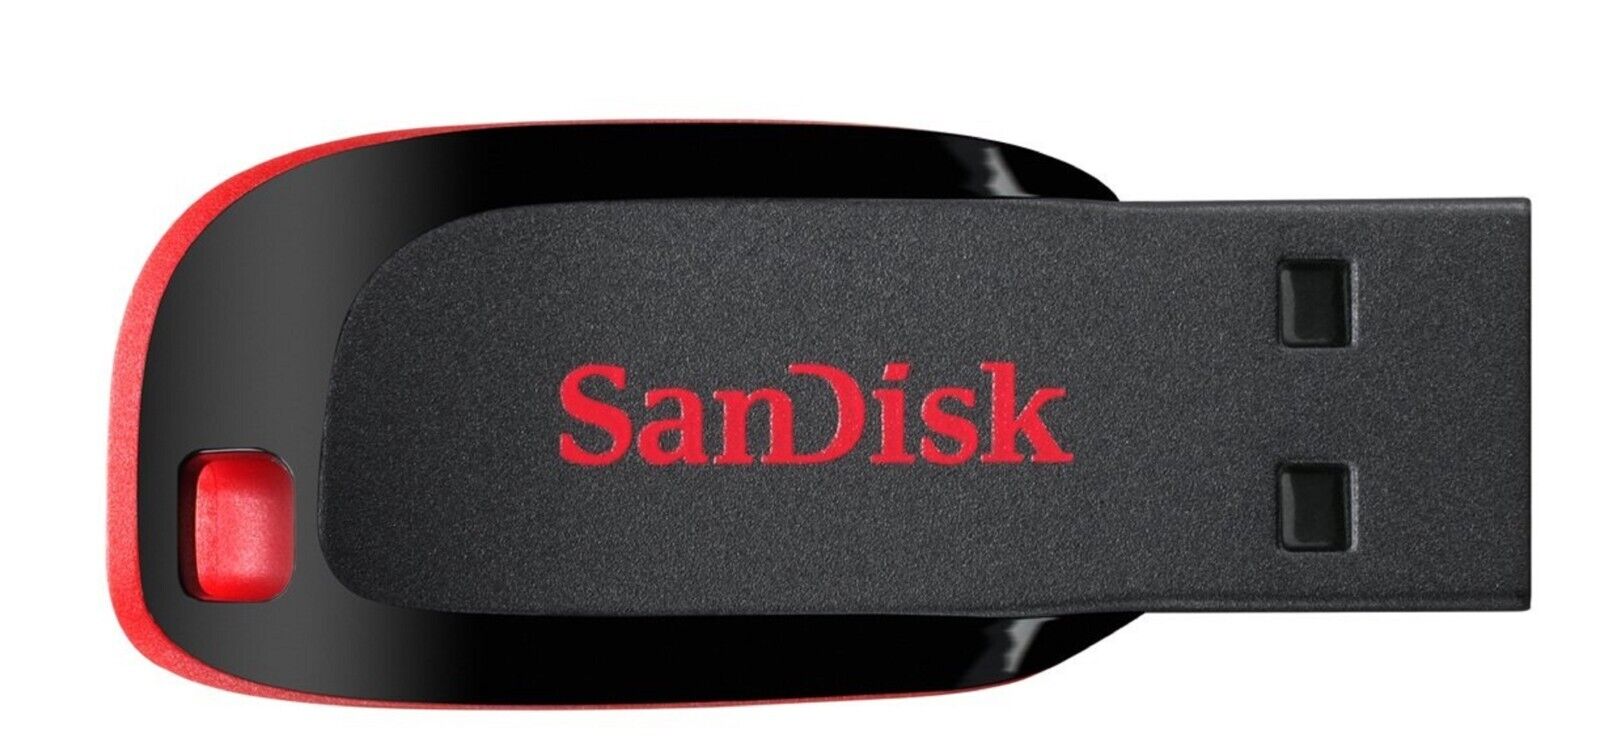 SanDisk Cruzer Blade 8GB USB 2.0 Flash Drive Thumb Drive Pen Drive SanDisk SDCZ36-008G-A11, SDCZ36-008G-B35, SDCZ6-8192-A11, SDCZ50-008G-A95, SDCZ50-008G-A46 - фотография #3